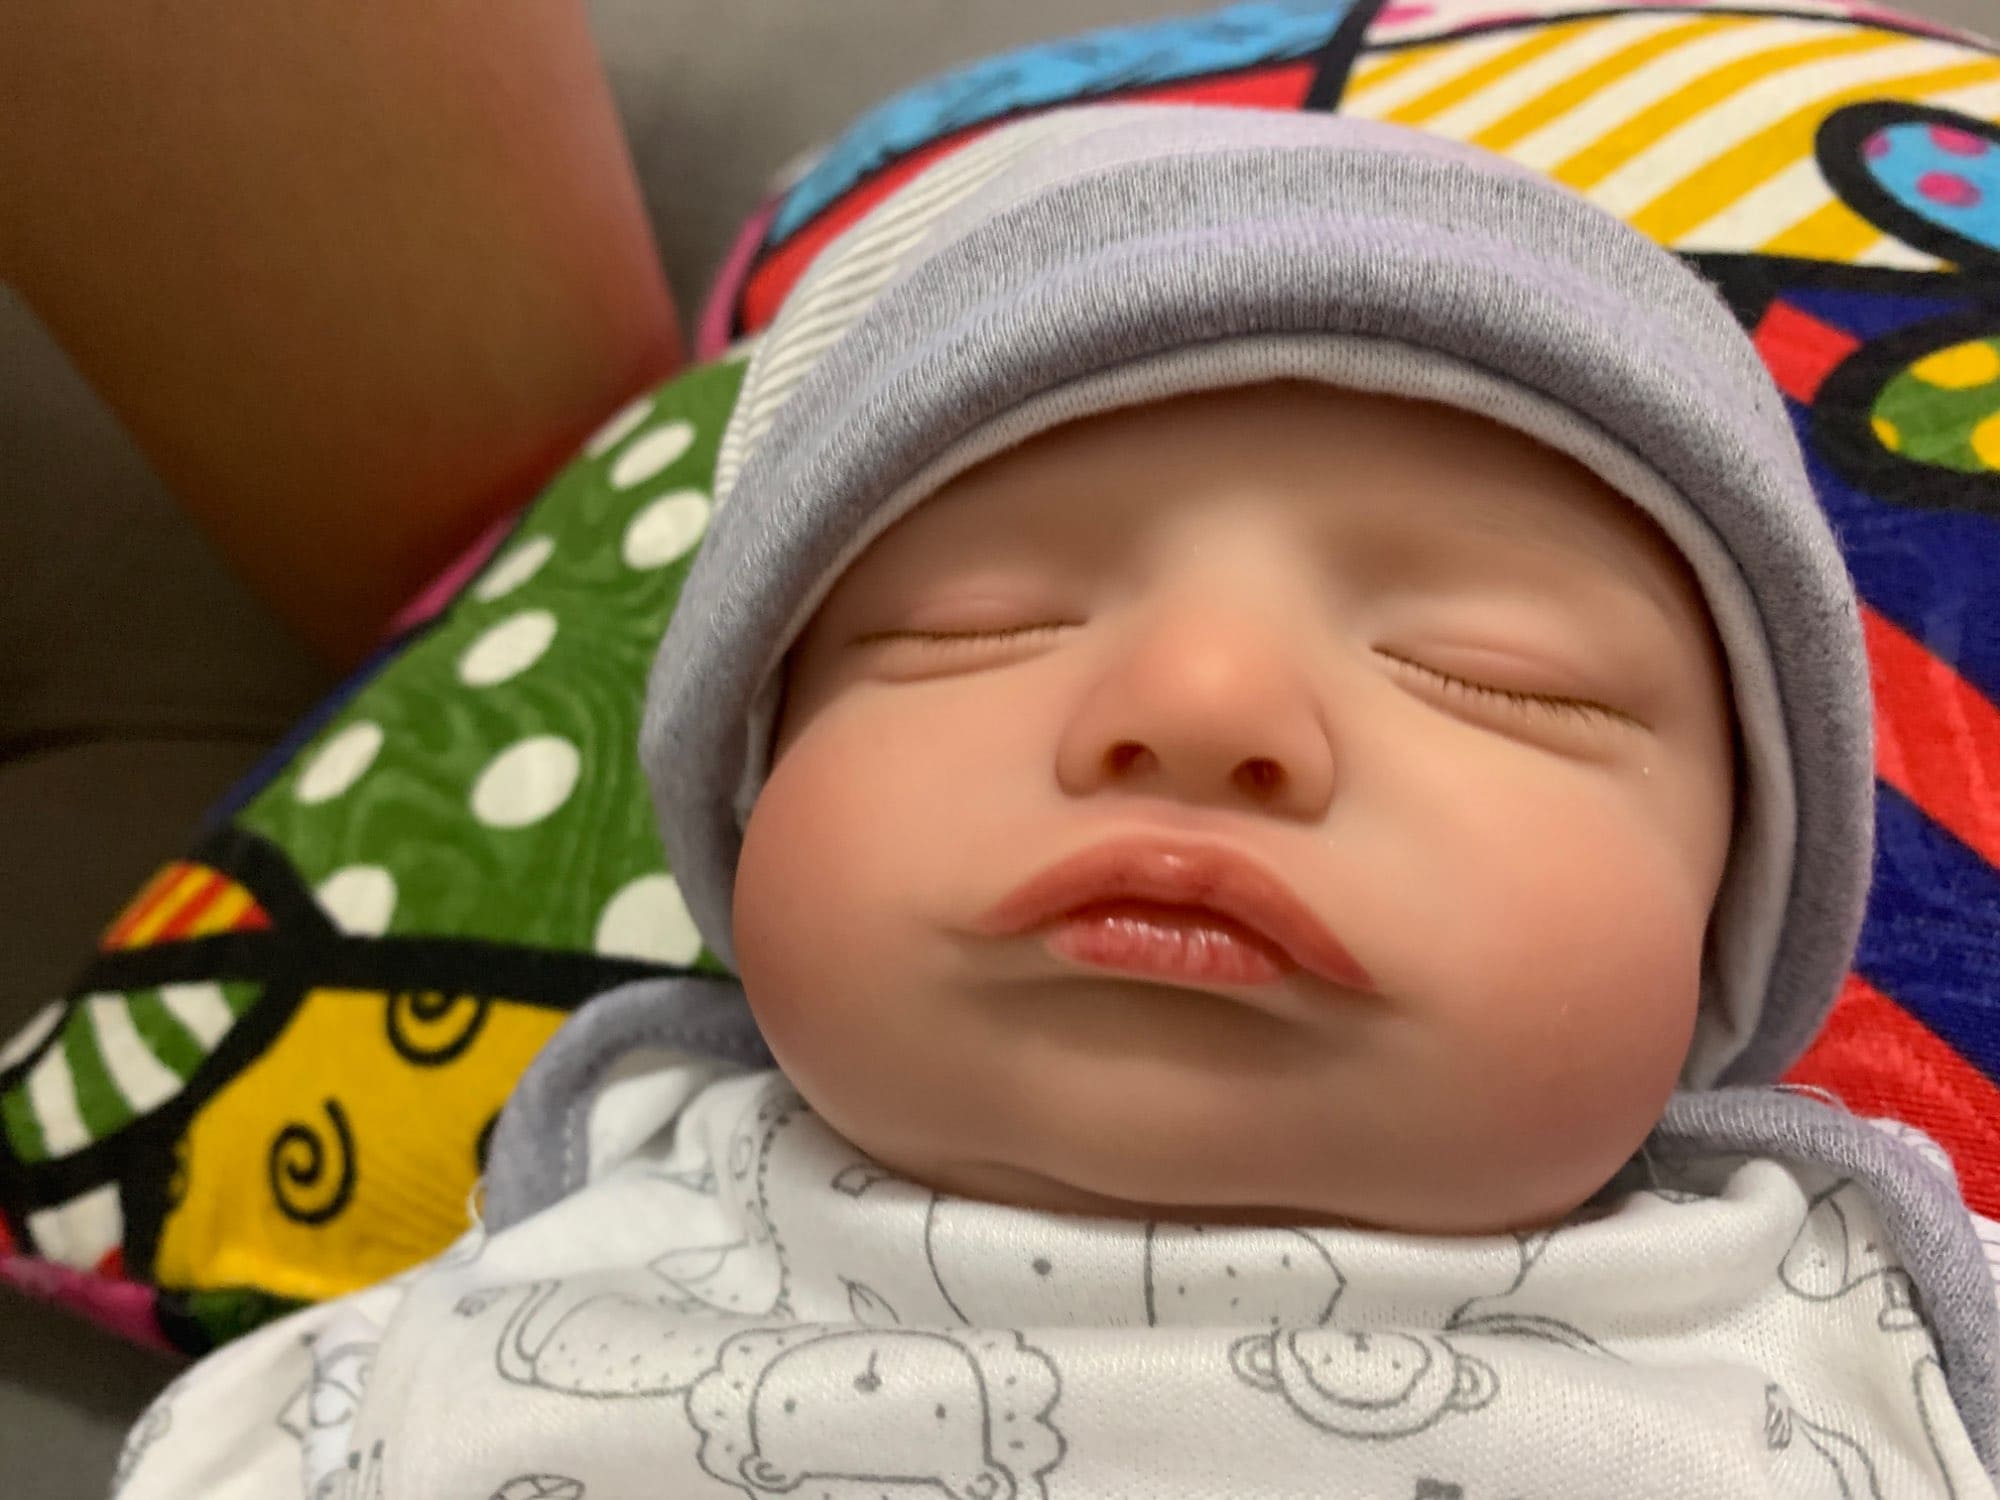 kit bebe reborn ashley con mofletes y cara gordita con ojos cerrados